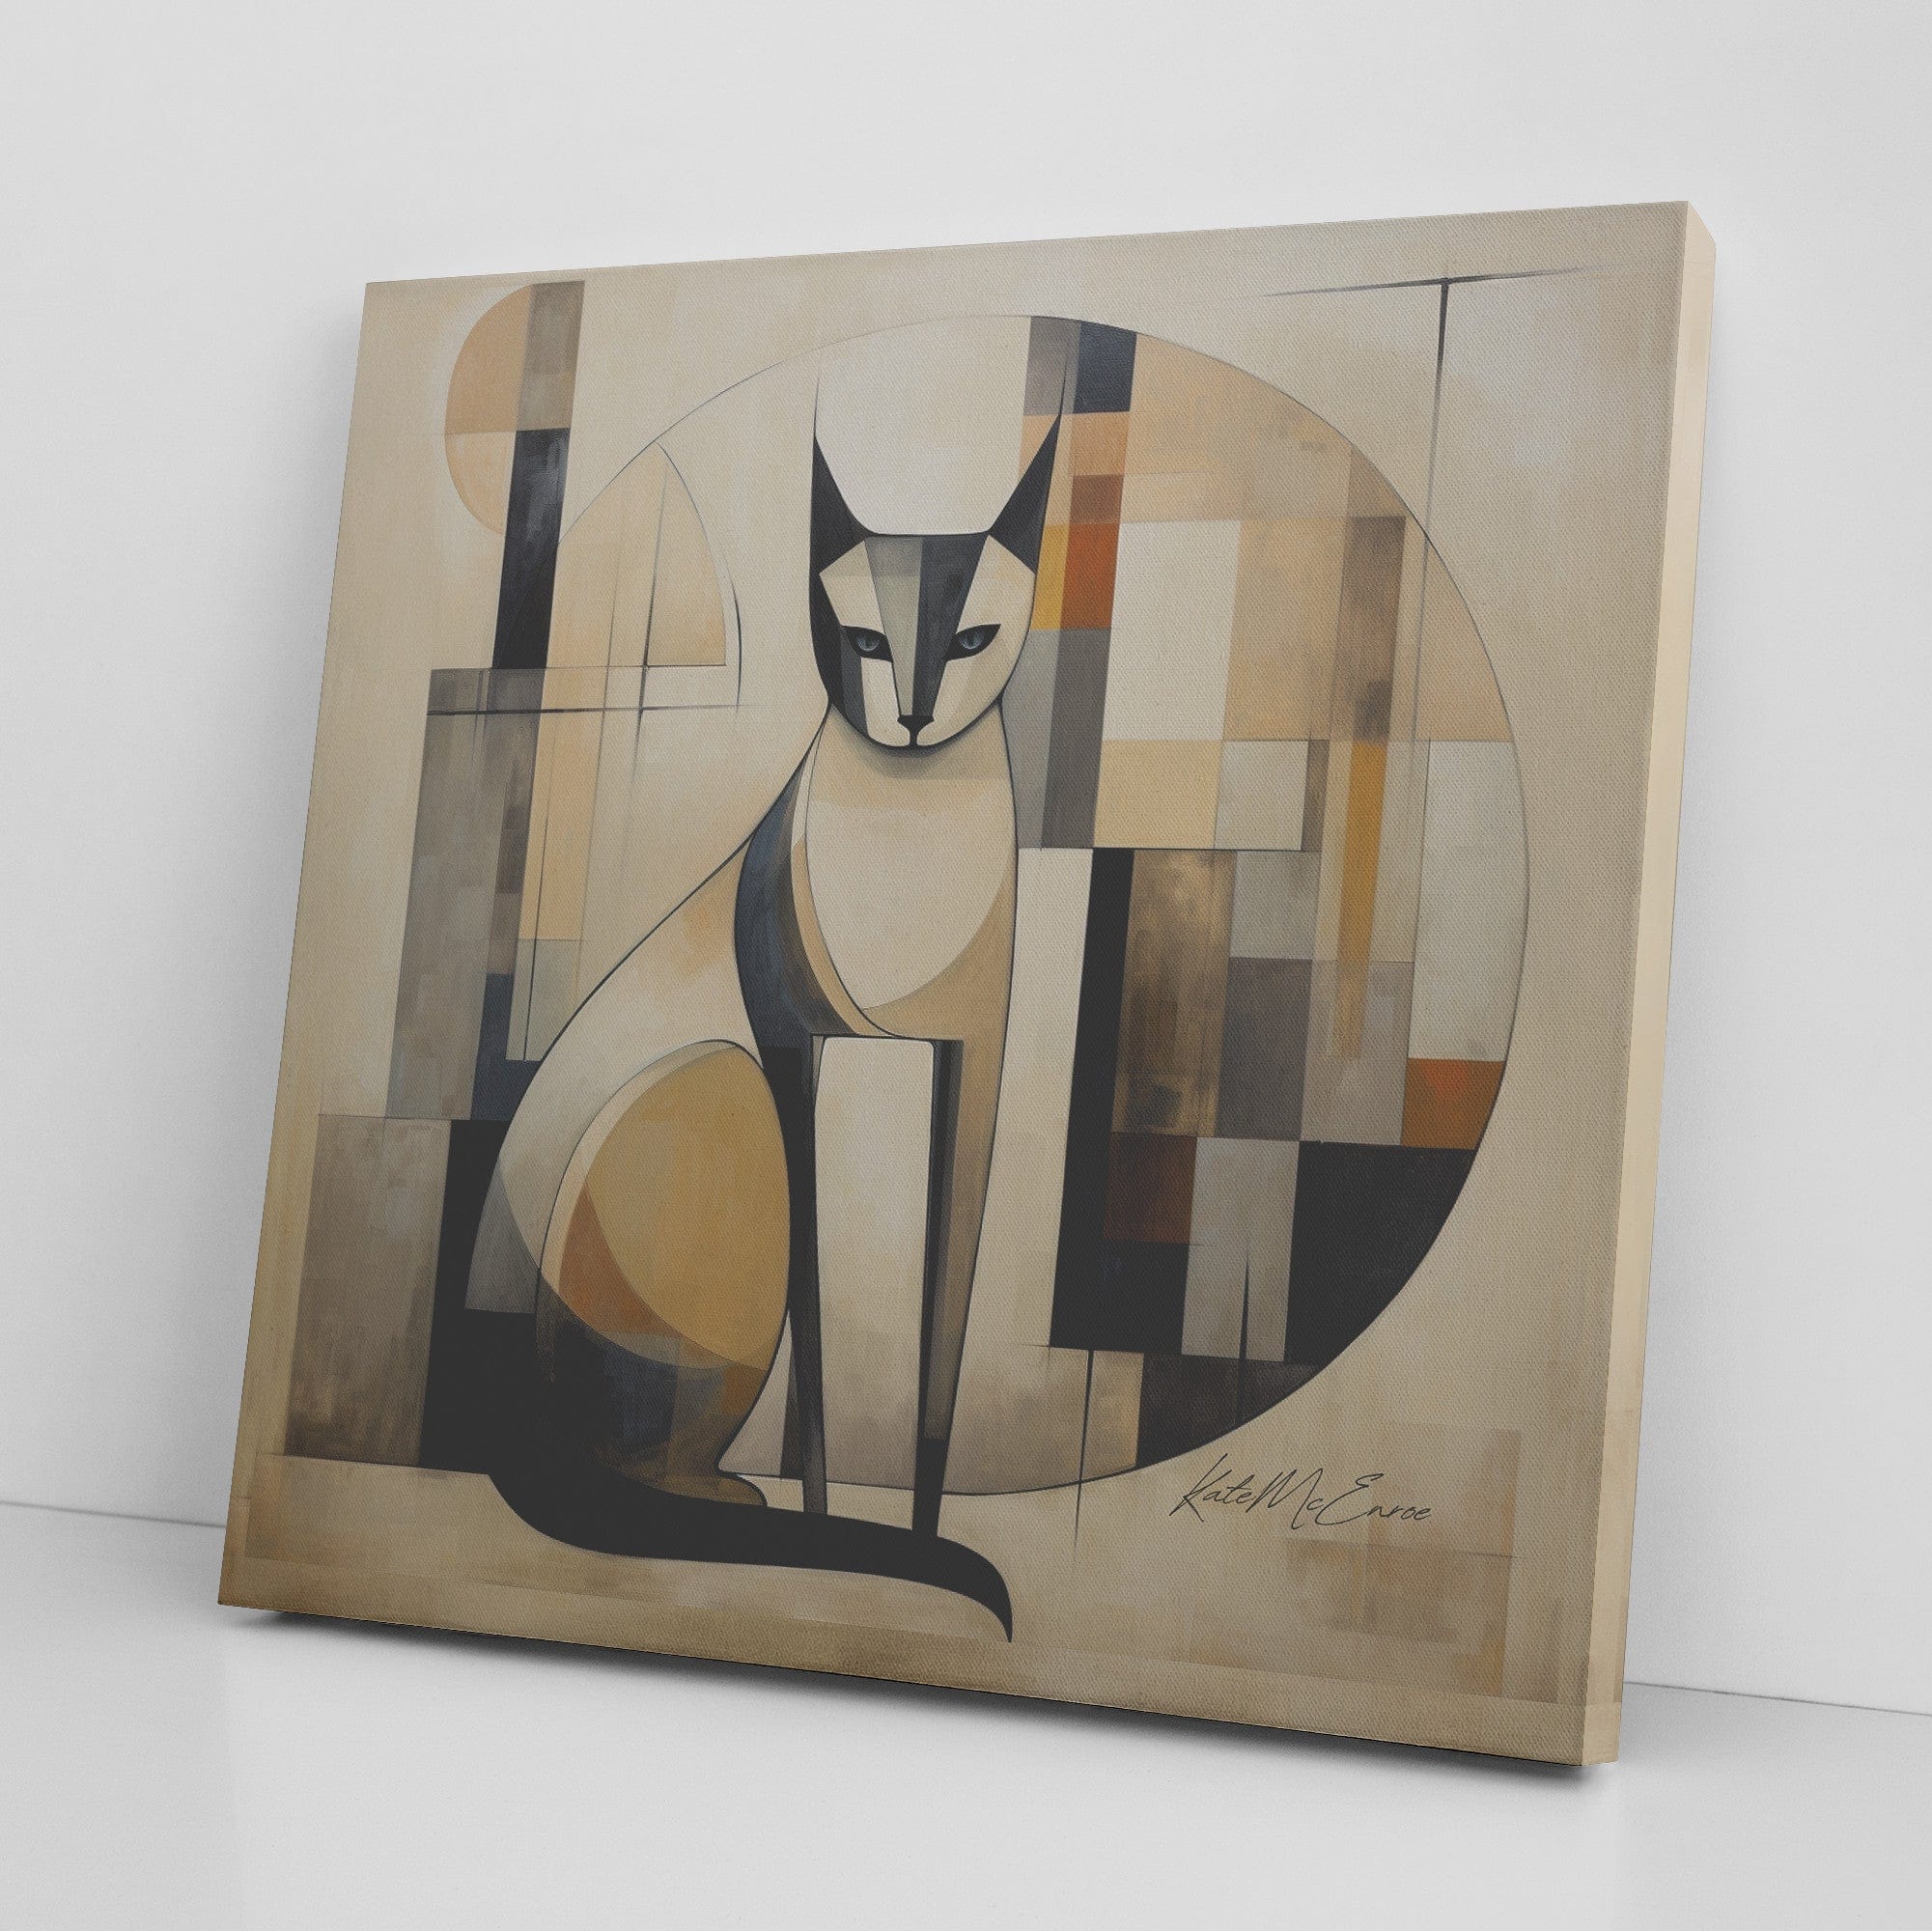 teelaunch Mid Century Modern Cat Abstract Bauhaus Canvas Wall Art Wall Art